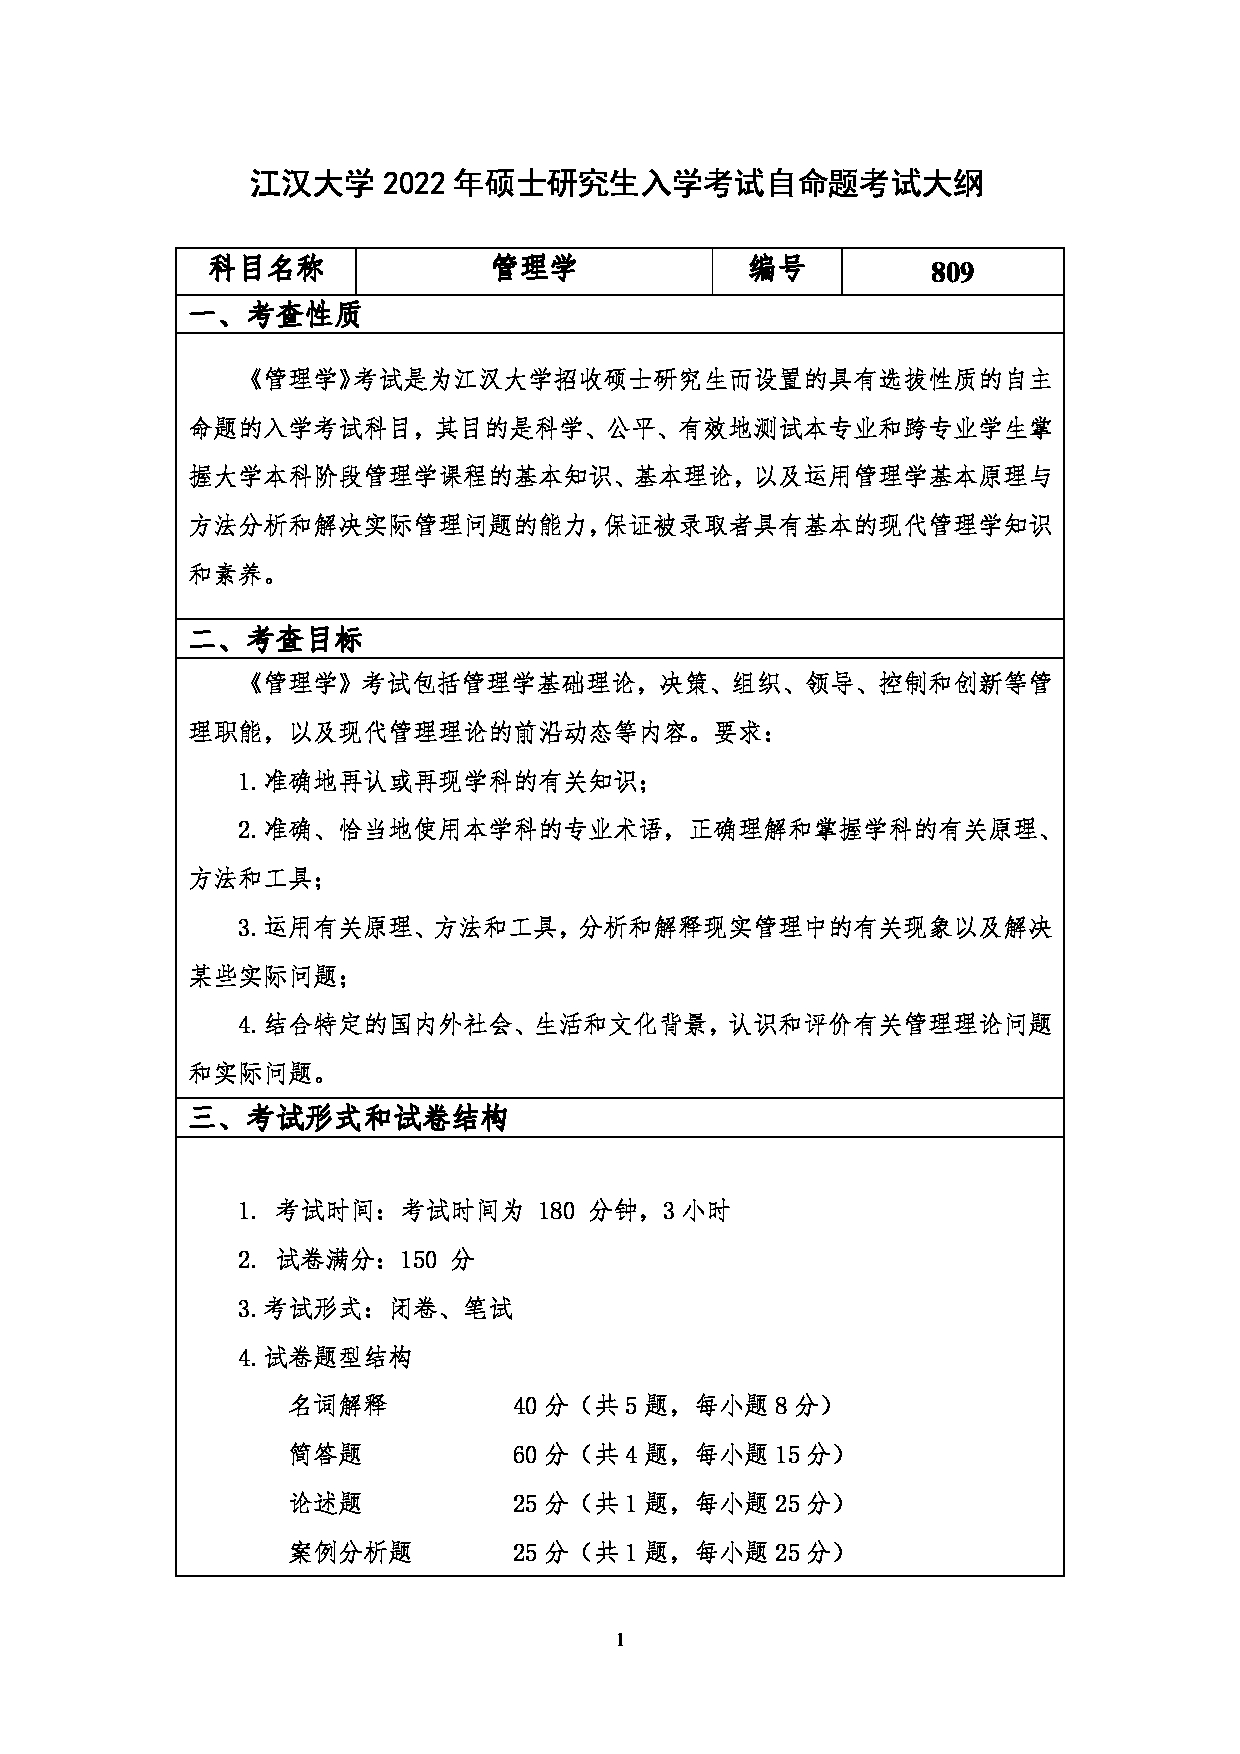 2023考研大纲：江汉大学2023年考研自命题科目 809管理学 考试大纲第1页